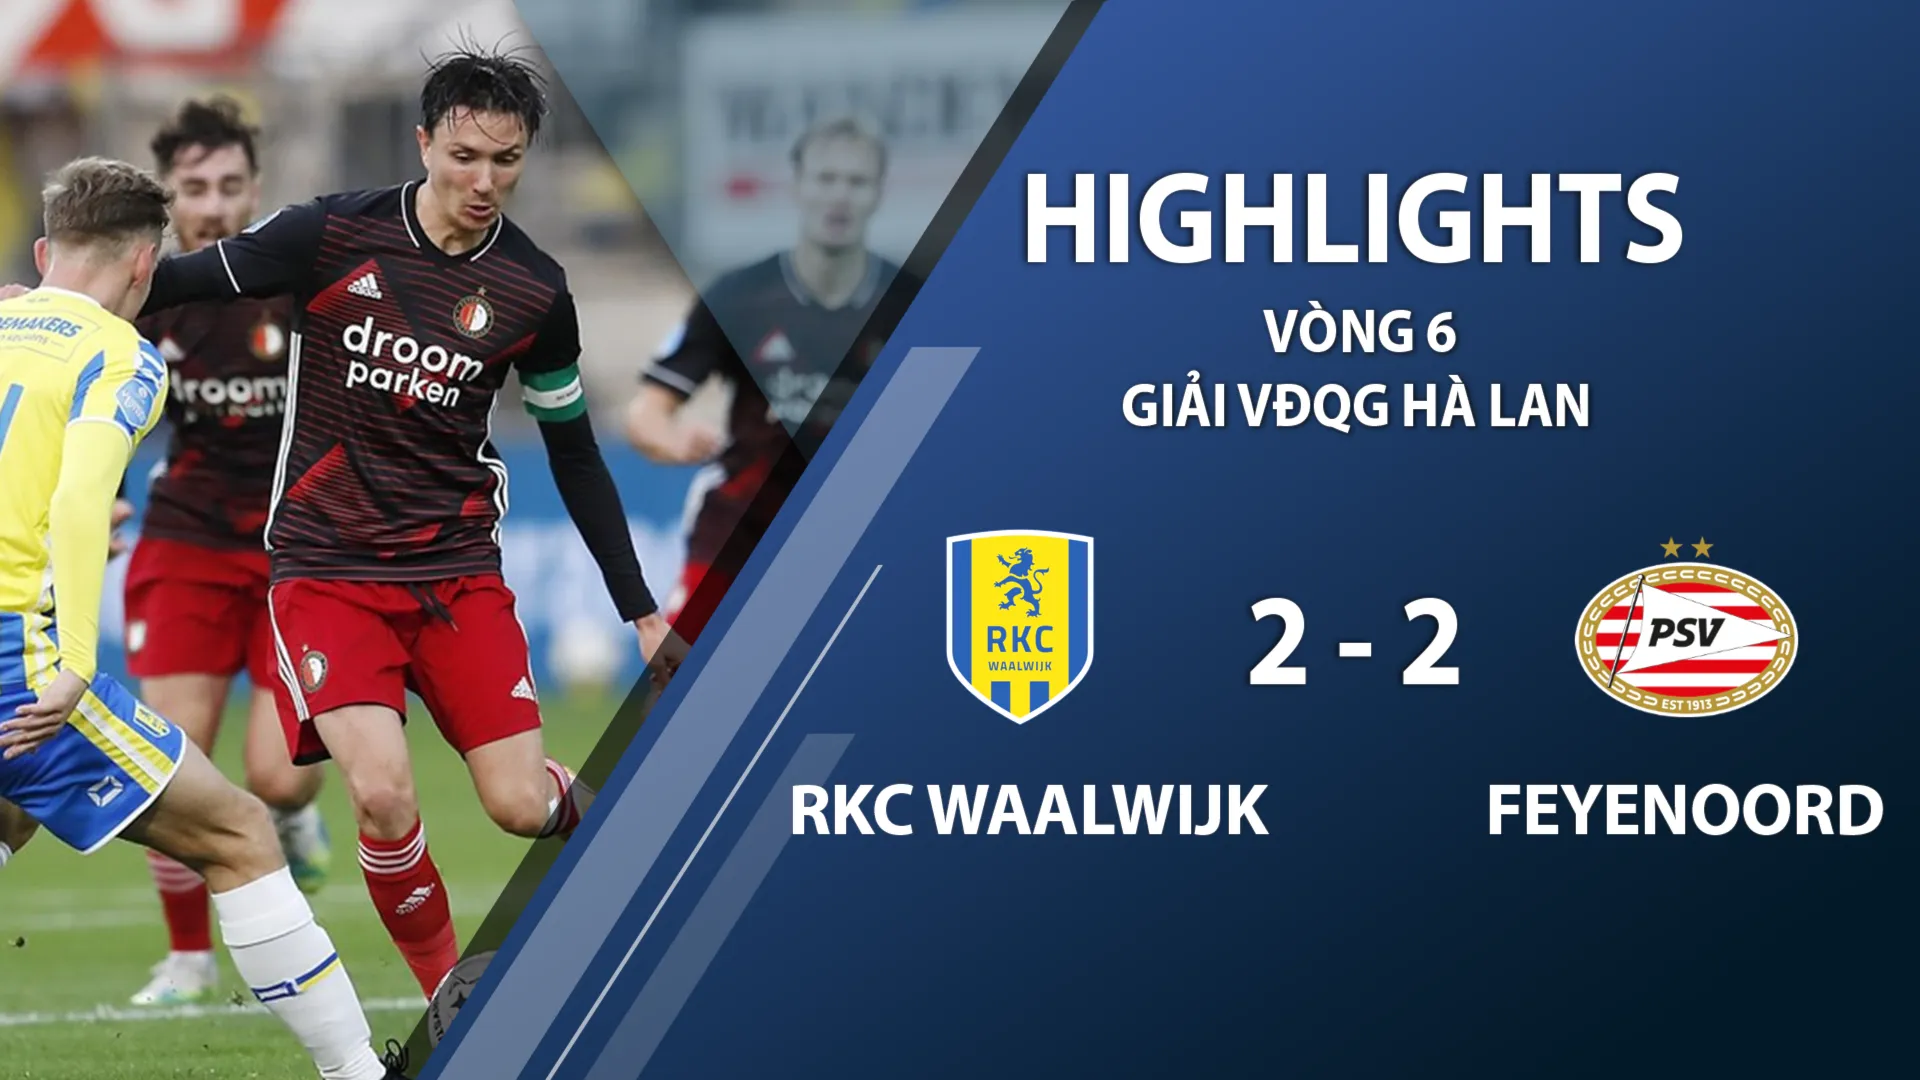 Highlights RKC Waalwijk 2-2 Feyenoord (vòng 6 giải VĐQG Hà Lan 2020/21)	